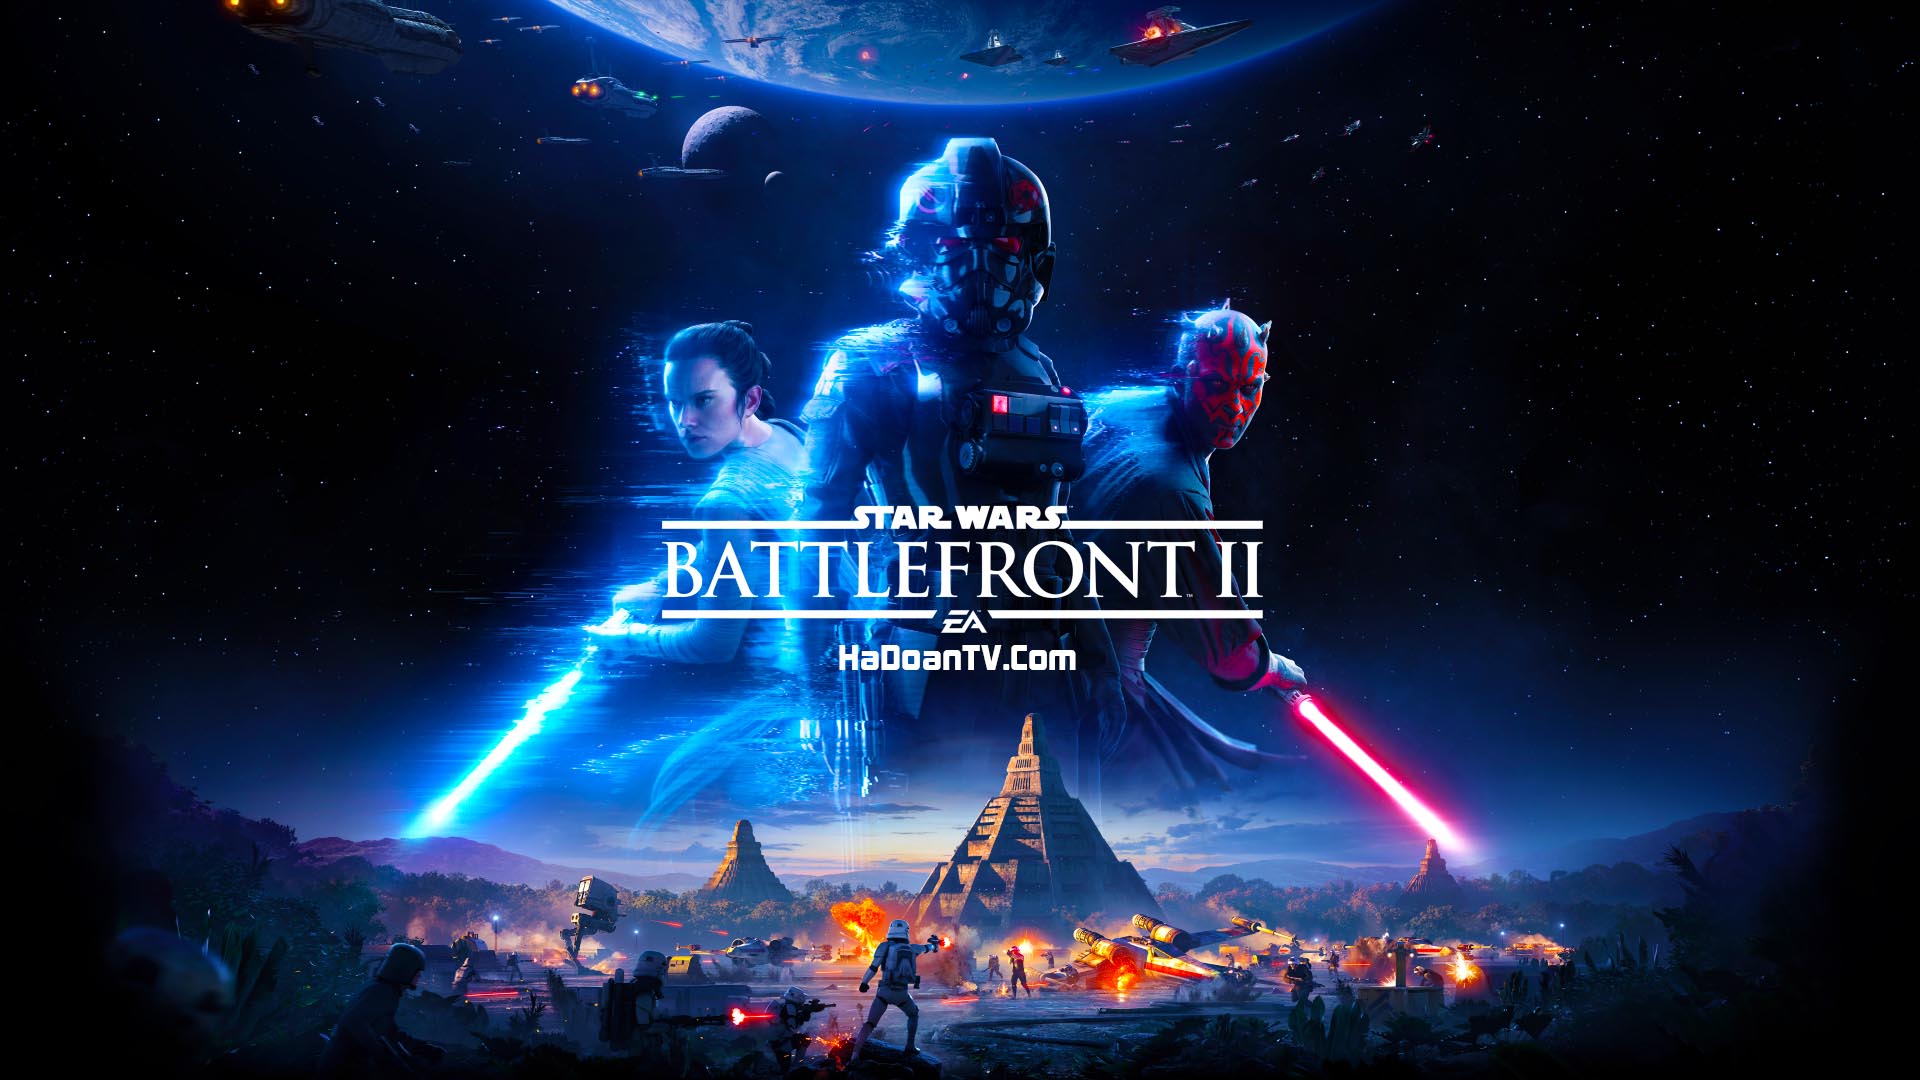 star wars battlefront ii celebration edition download